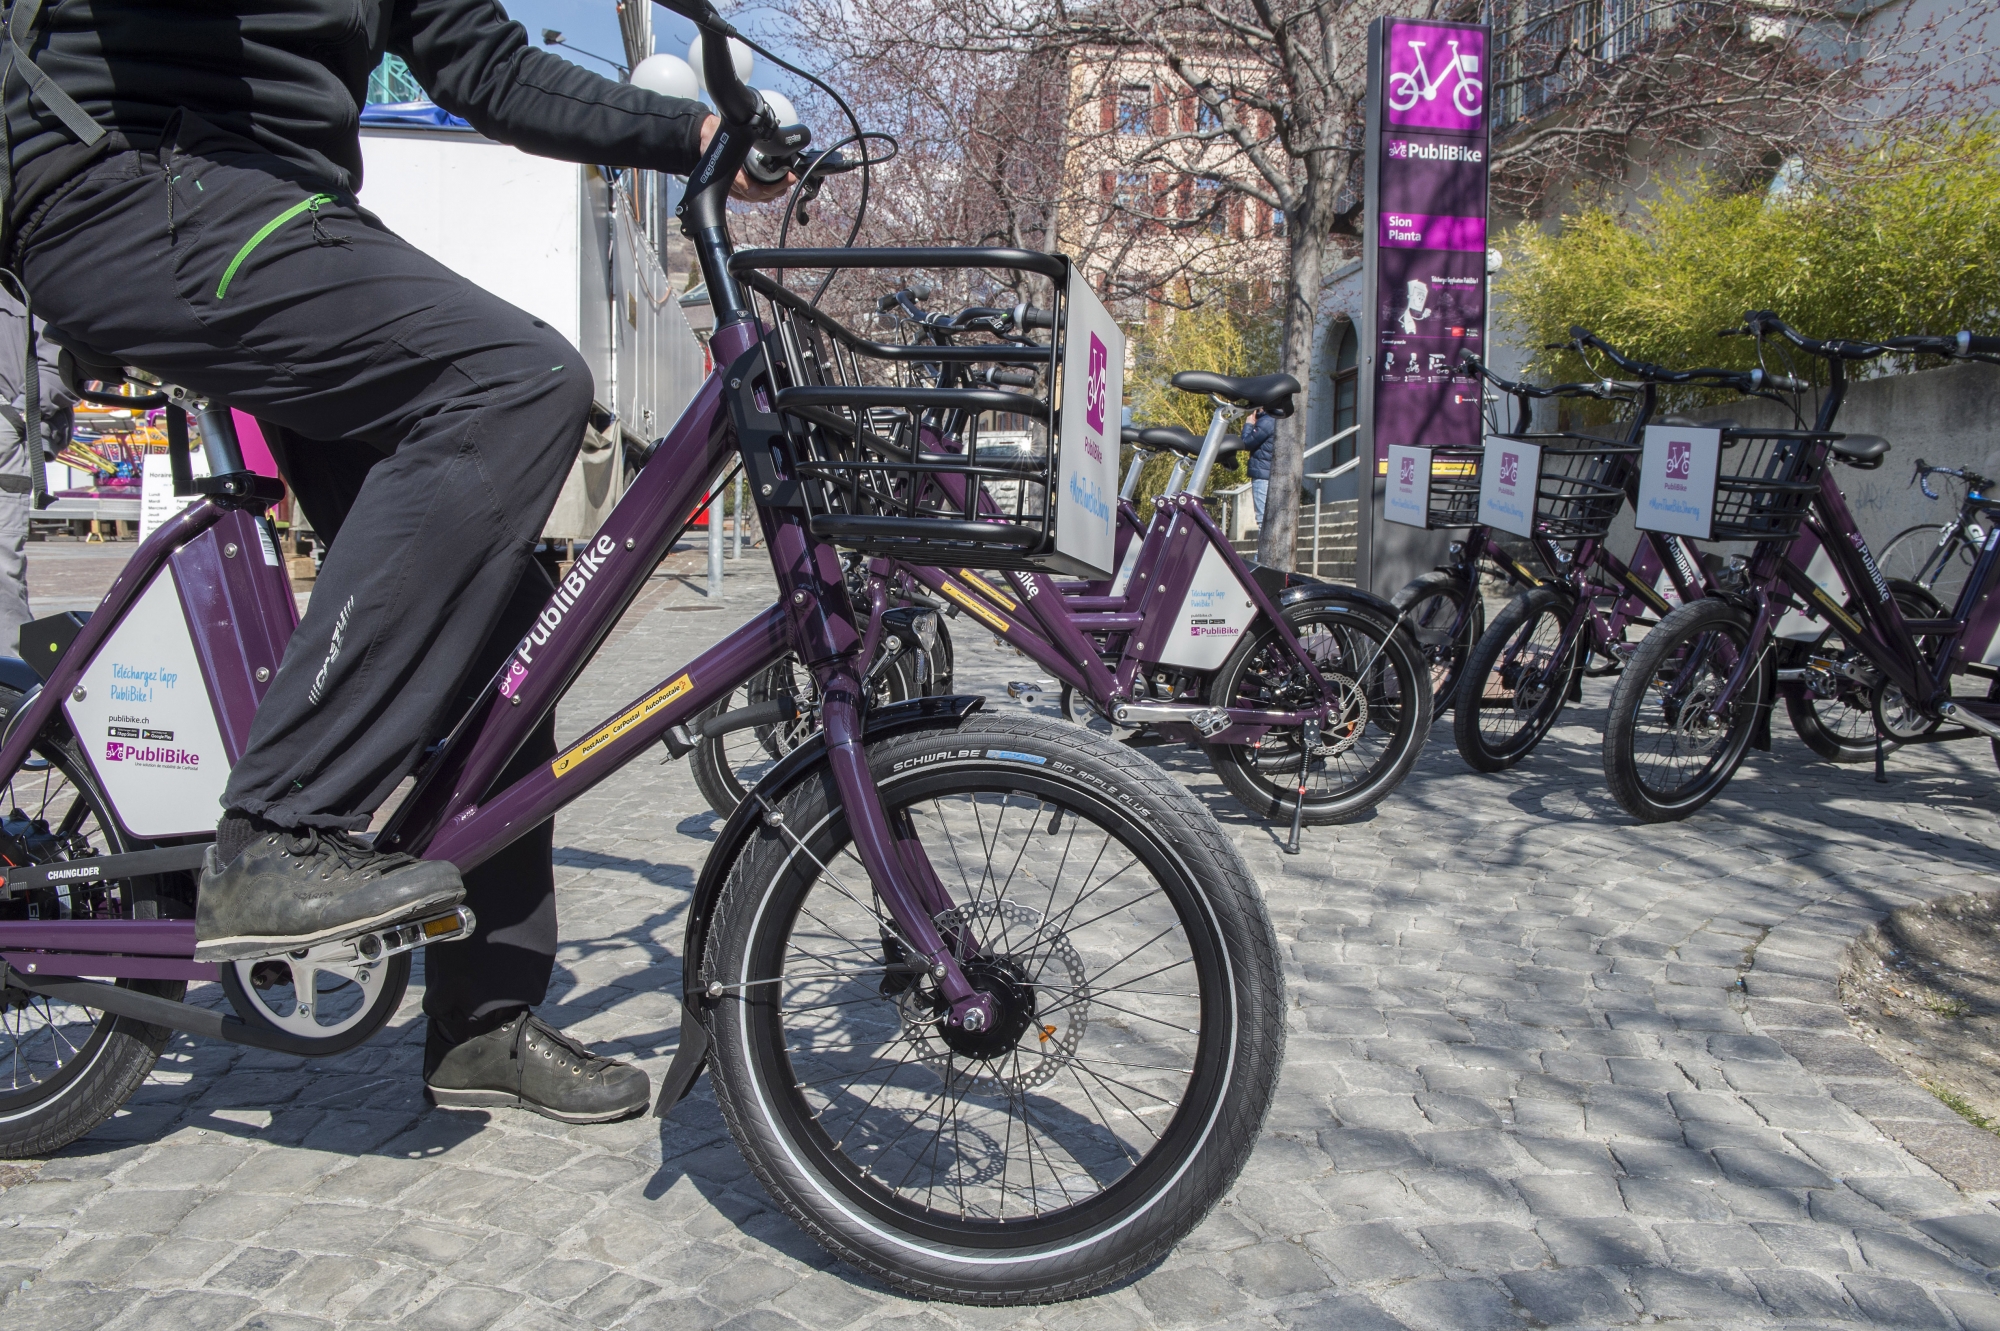 Les pétitionnaires demandent notamment davantage de stations Publibike. Le "schéma directeur vélo" élaboré par les autorités sédunoises en prévoit deux nouvelles, aux Potences et à Tourbillon.